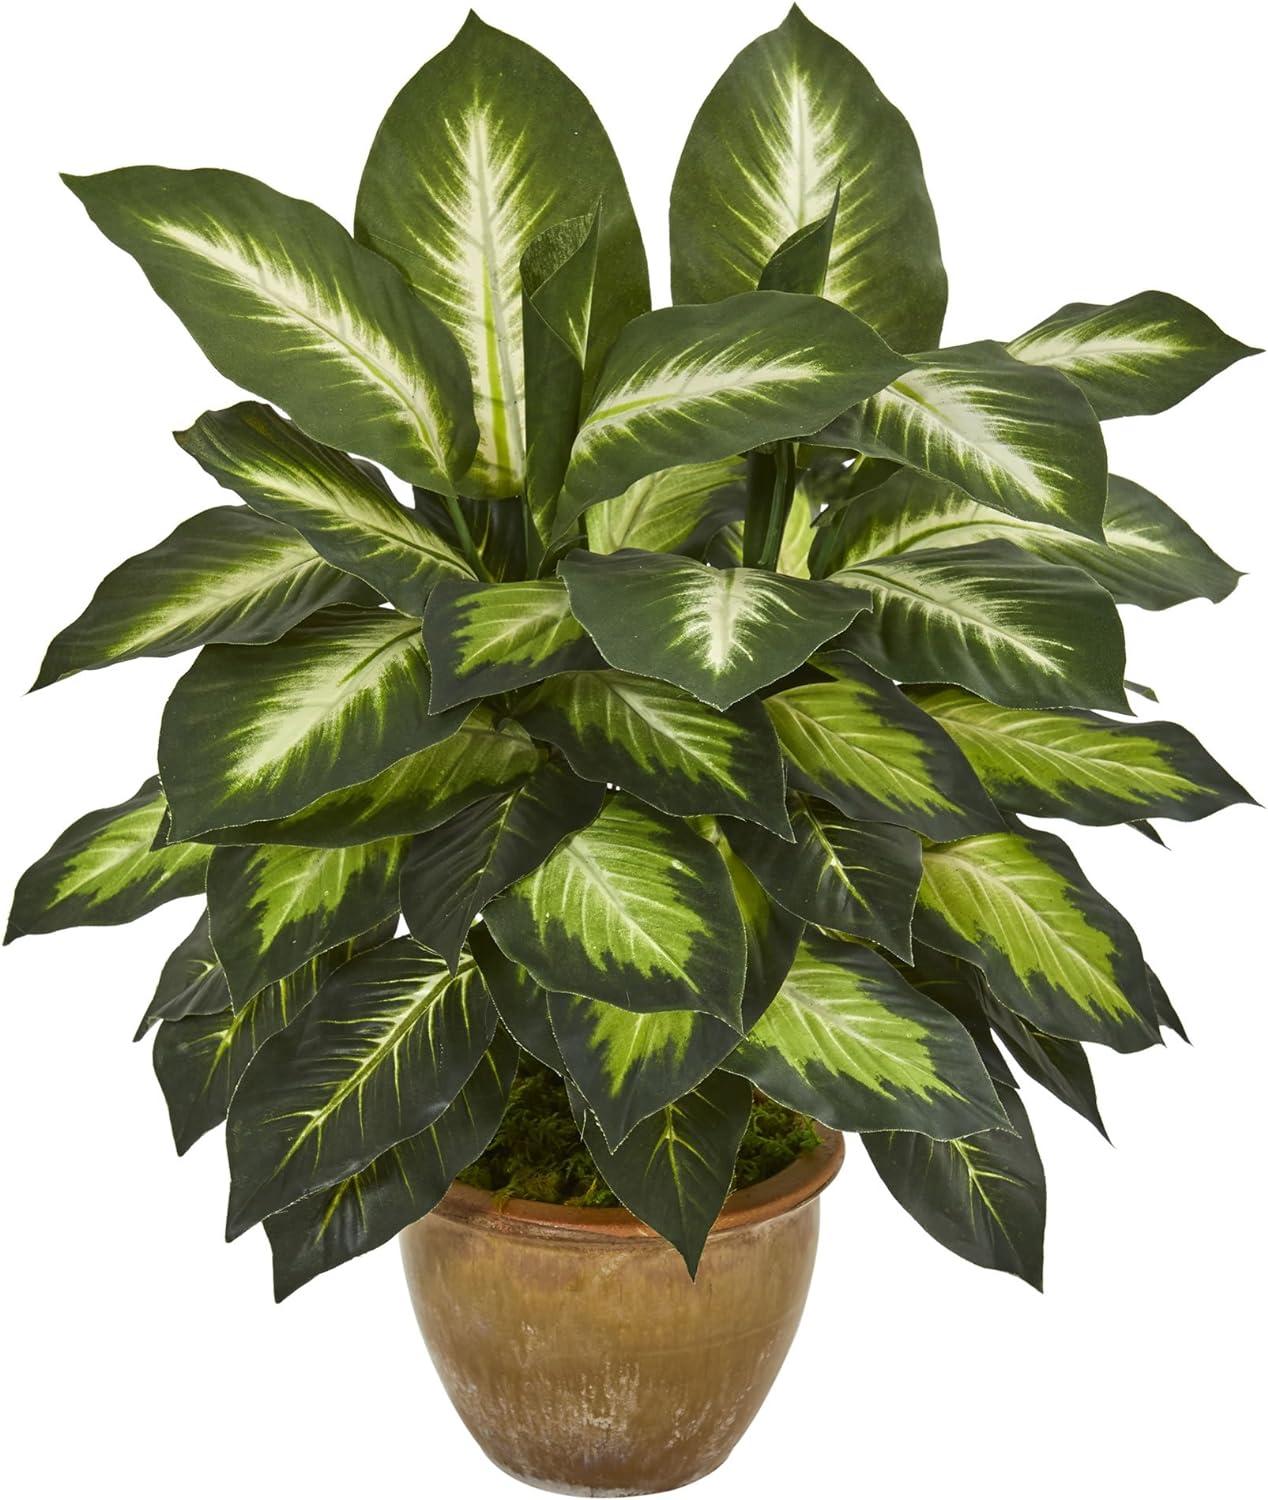 22.5" Green Dieffenbachia Artificial Plant in Ceramic Planter